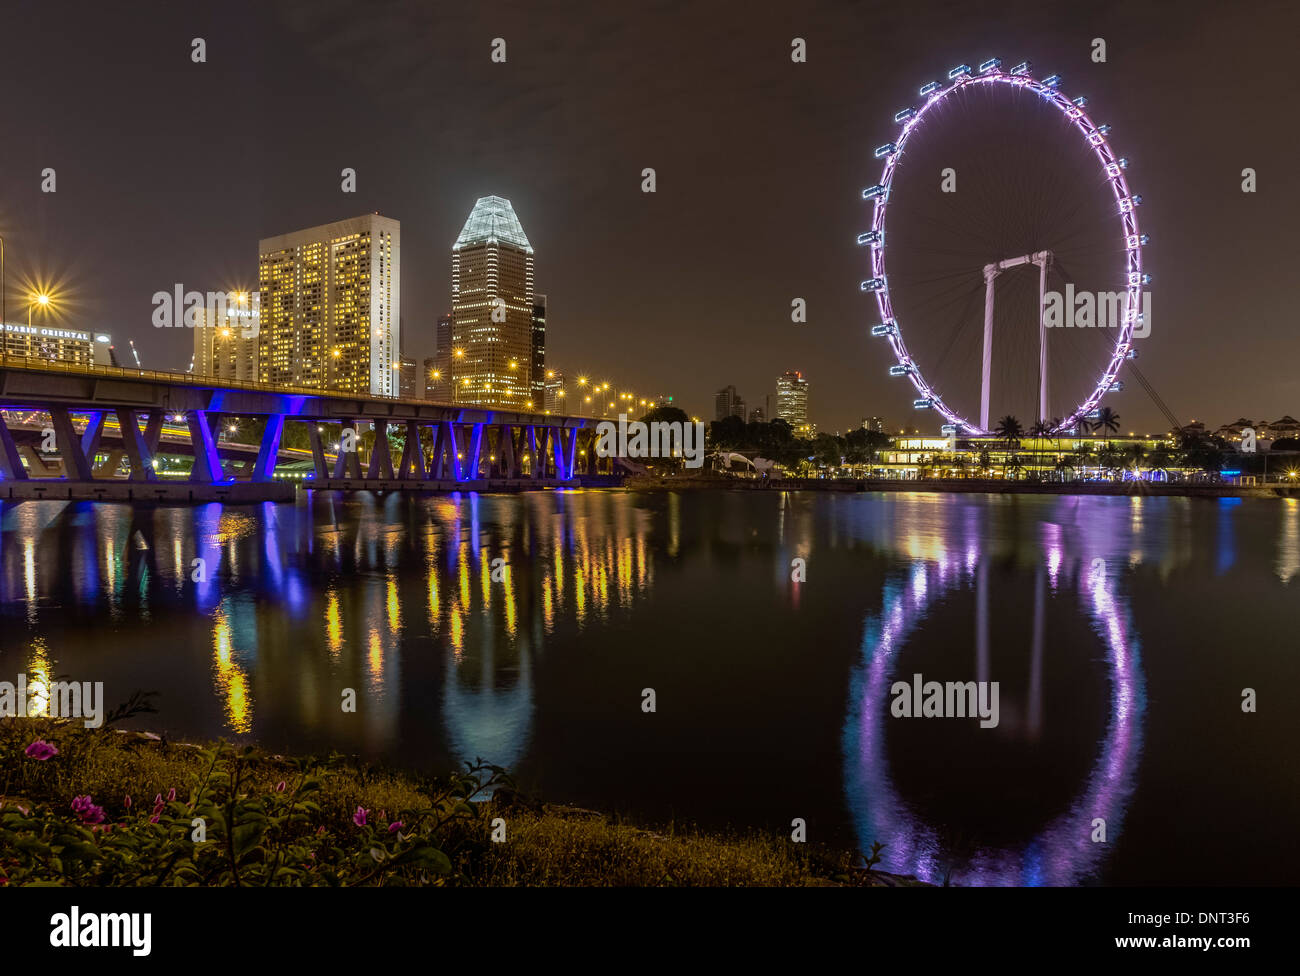 Nachtansicht des Singapore Flyer, Singapur Stockfoto